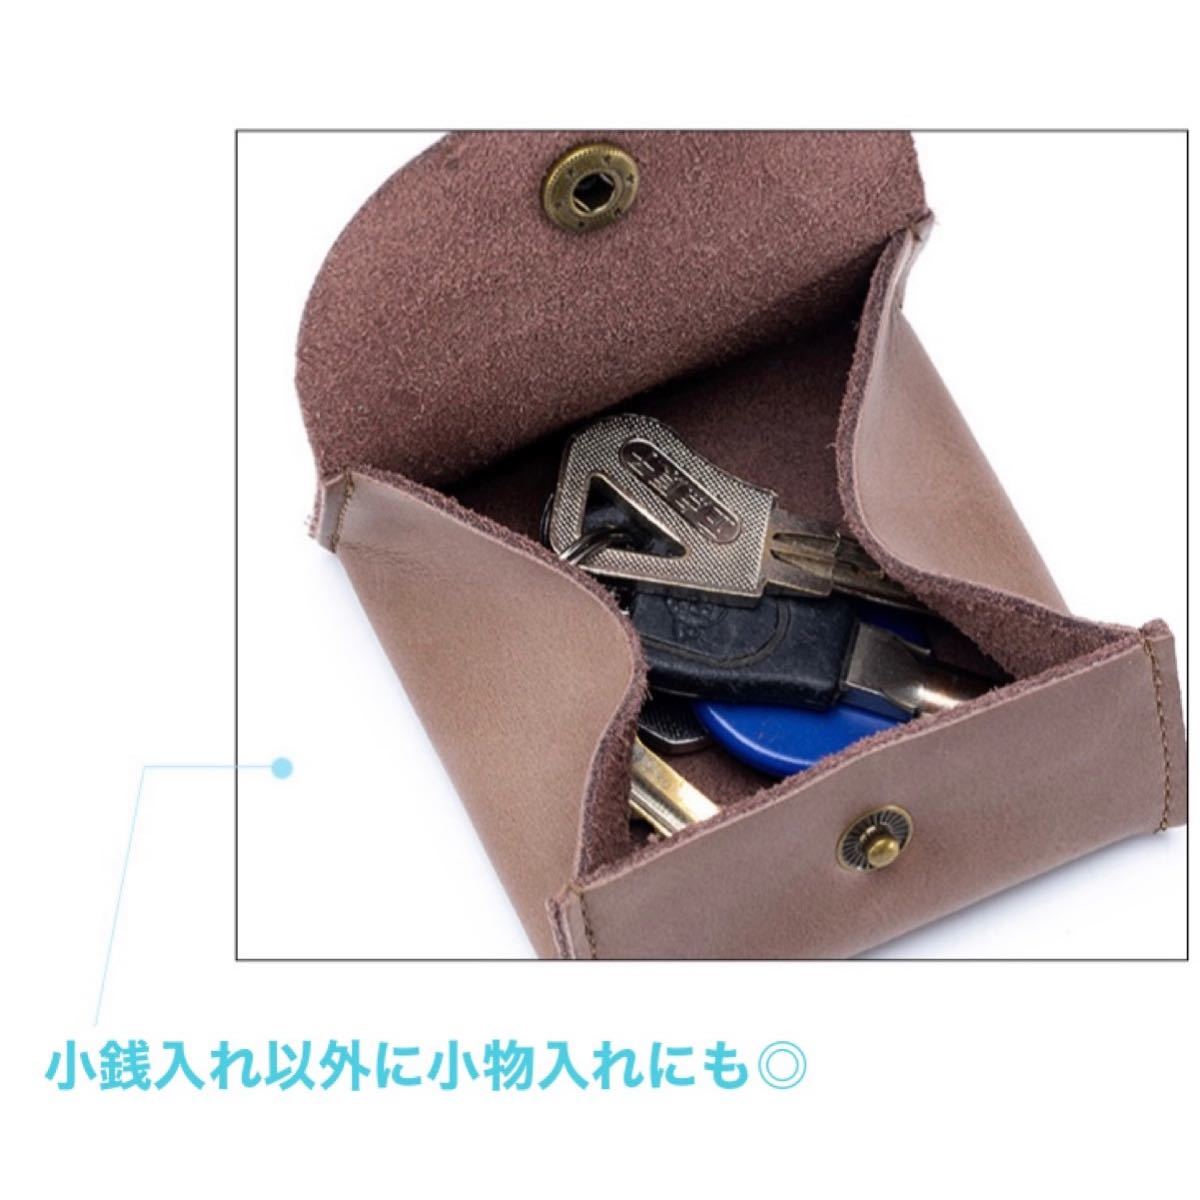 小銭入れ 小さい財布 コインケース ナチュラル 柔らかい 便利 耐久性抜群 高級感 おしゃれ コンパクト ボックス型